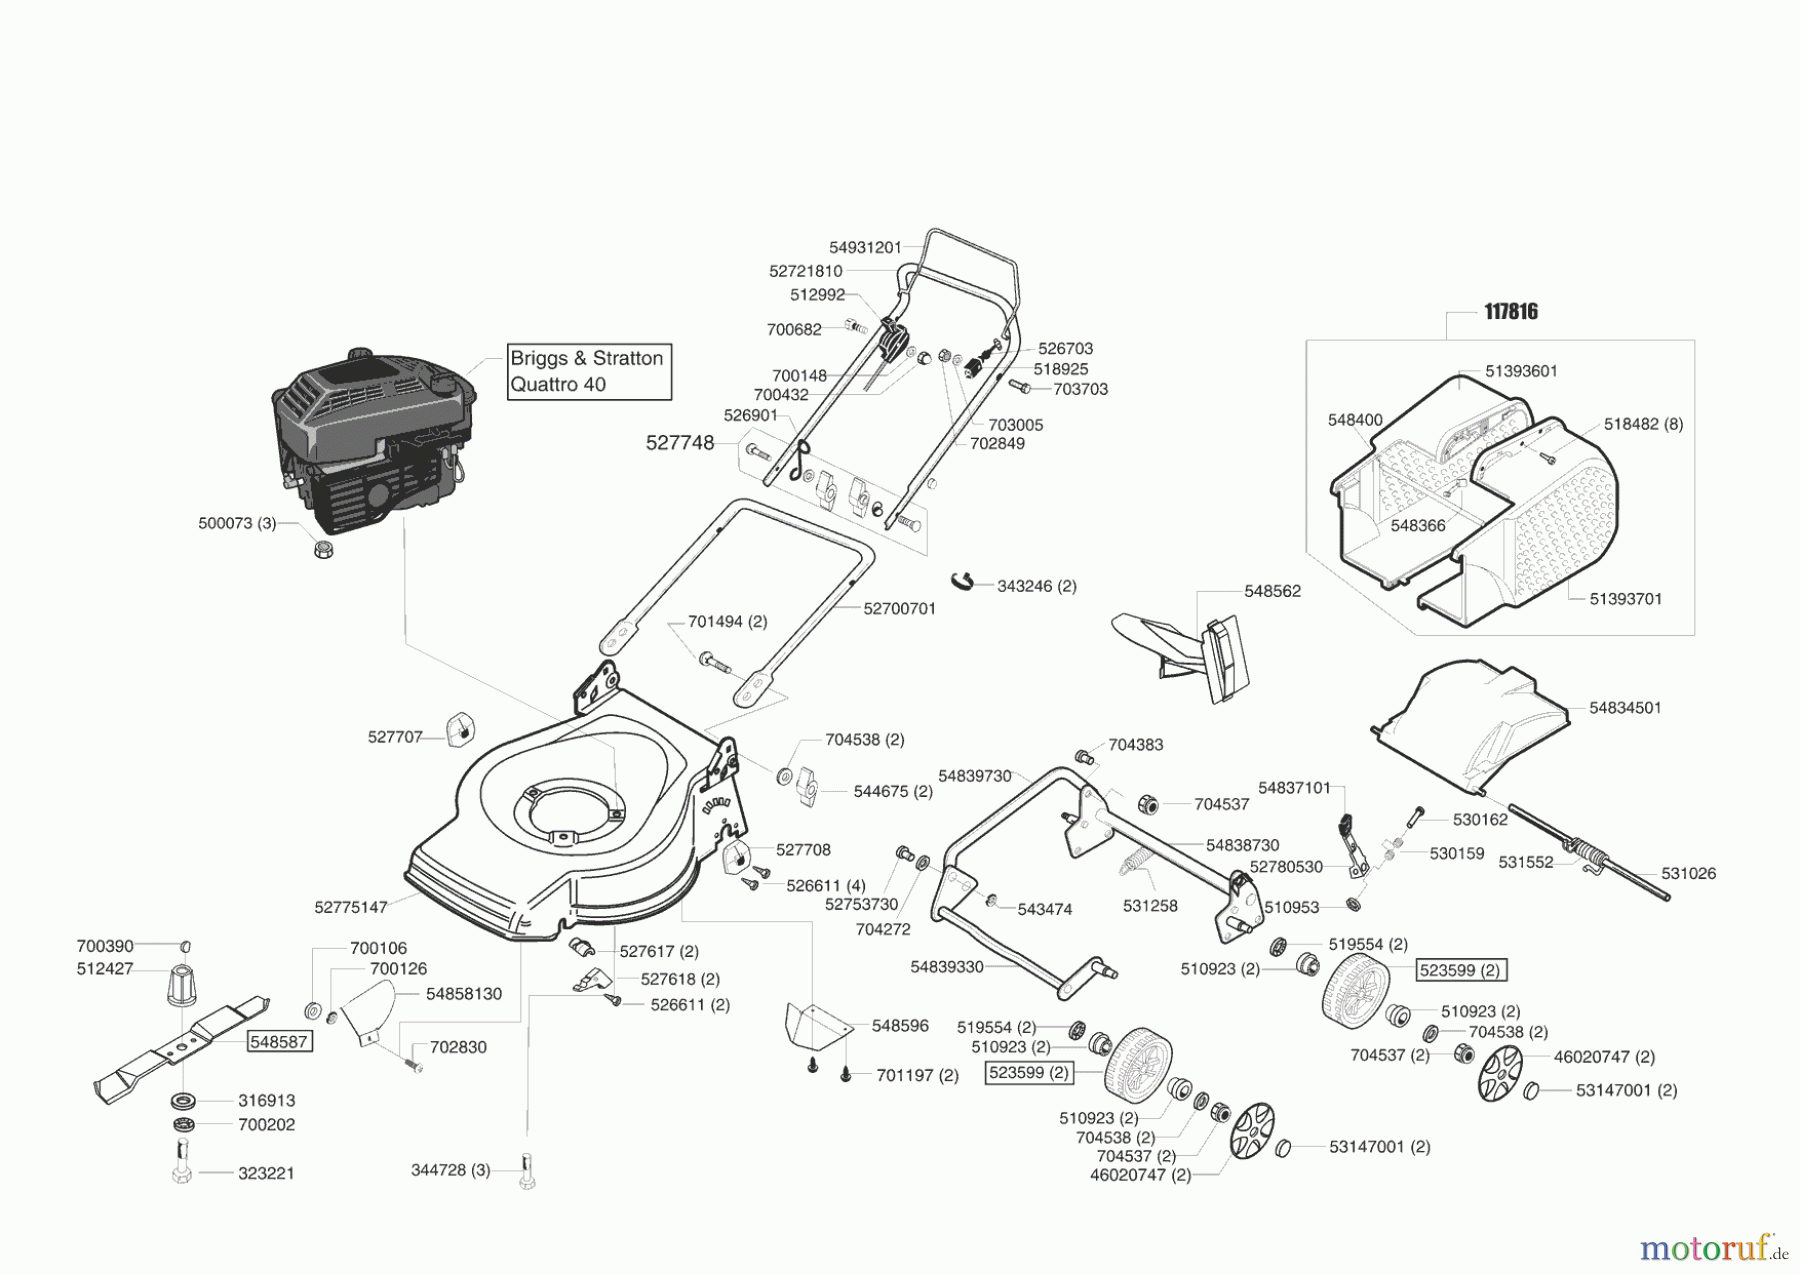  Dehner Gartentechnik Benzinrasenmäher B 47 MZ ab 10/2003 Seite 1